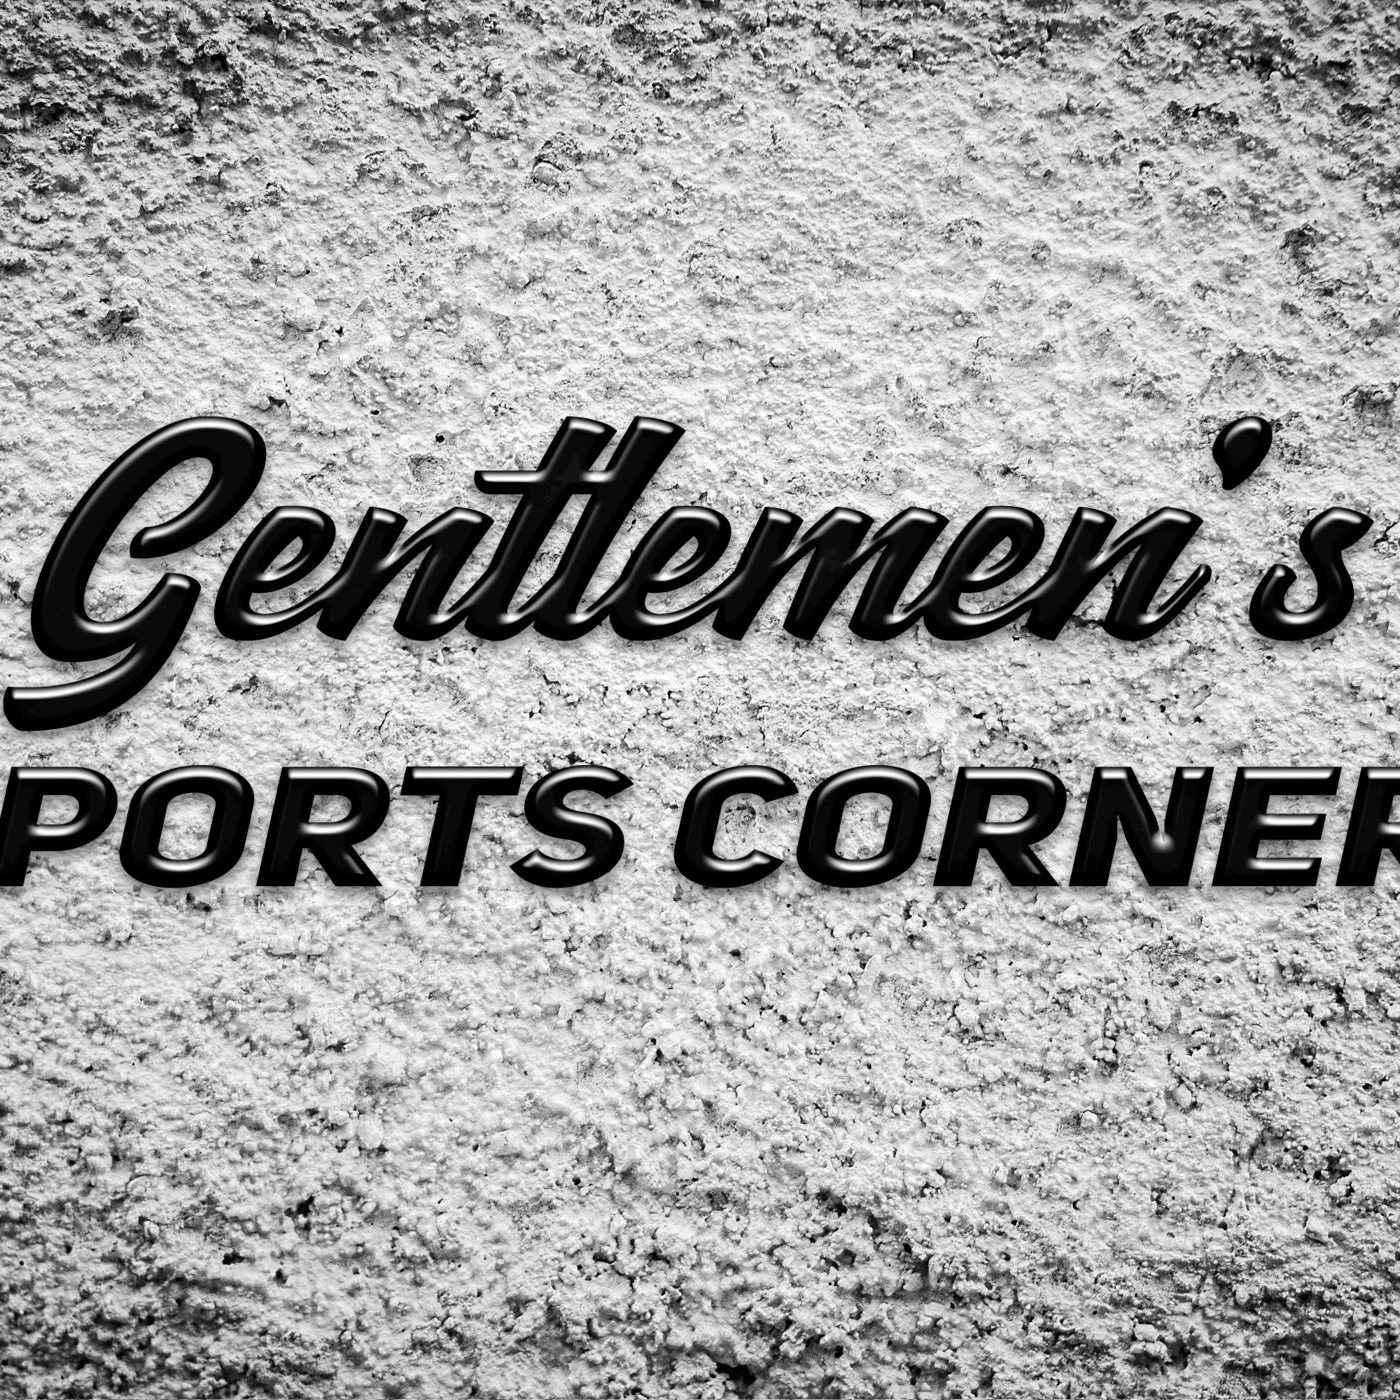 Gentlemen's Sports Corner